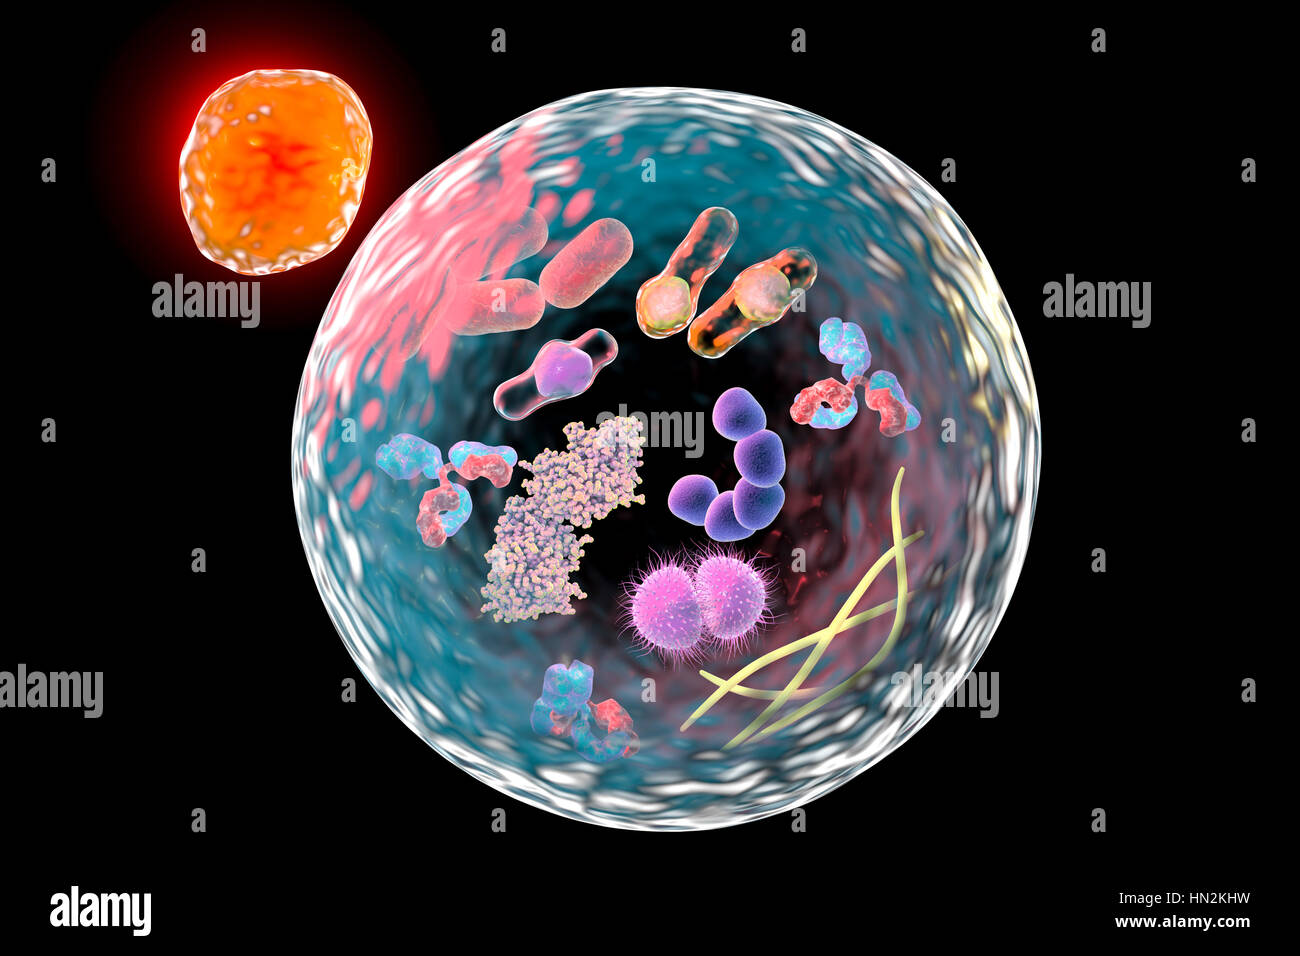 Autophagie. Computer Illustration ein Lysosomen (Orange) mit einer Autophagosome (große Kugel). Autophagie (Autophagocytosis) ist der natürliche Mechanismus, der unnötige oder dysfunktionalen Zellbestandteile zerstört und ihre Materialien recycelt. Die Zielkomponenten sind zunächst isoliert vom Rest der Zelle innerhalb der Doppel-membraned Autophagosome. Diese Sicherungen dann ein Lysosomen, dessen Inhalt die Zielkomponenten verschlechtern. Die 2016 erhielt japanische Zellbiologe Yoshinori Ohsumi für seine Entdeckungen von Mechanismen zur Autophagie Nobelpreis für Physiologie oder Medizin. Stockfoto